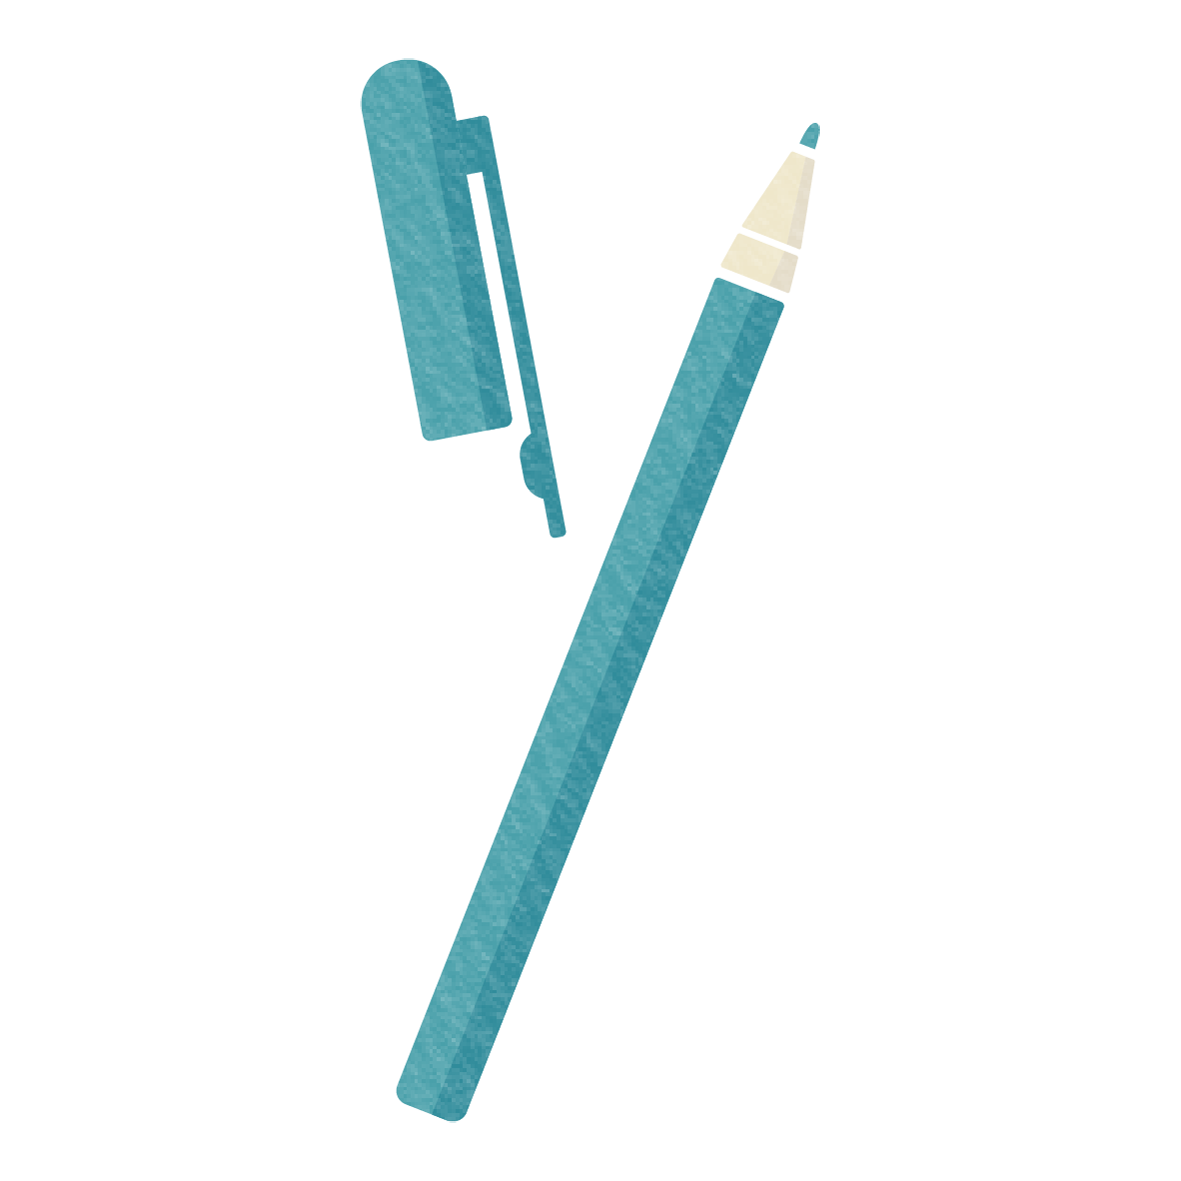 無造作に置かれた青いペンのイラスト素材です。<br>
青は、勉強や集中のイメージがある色なので、塾のチラシや朝活の宣伝のイラストとしての使用がオススメです♪